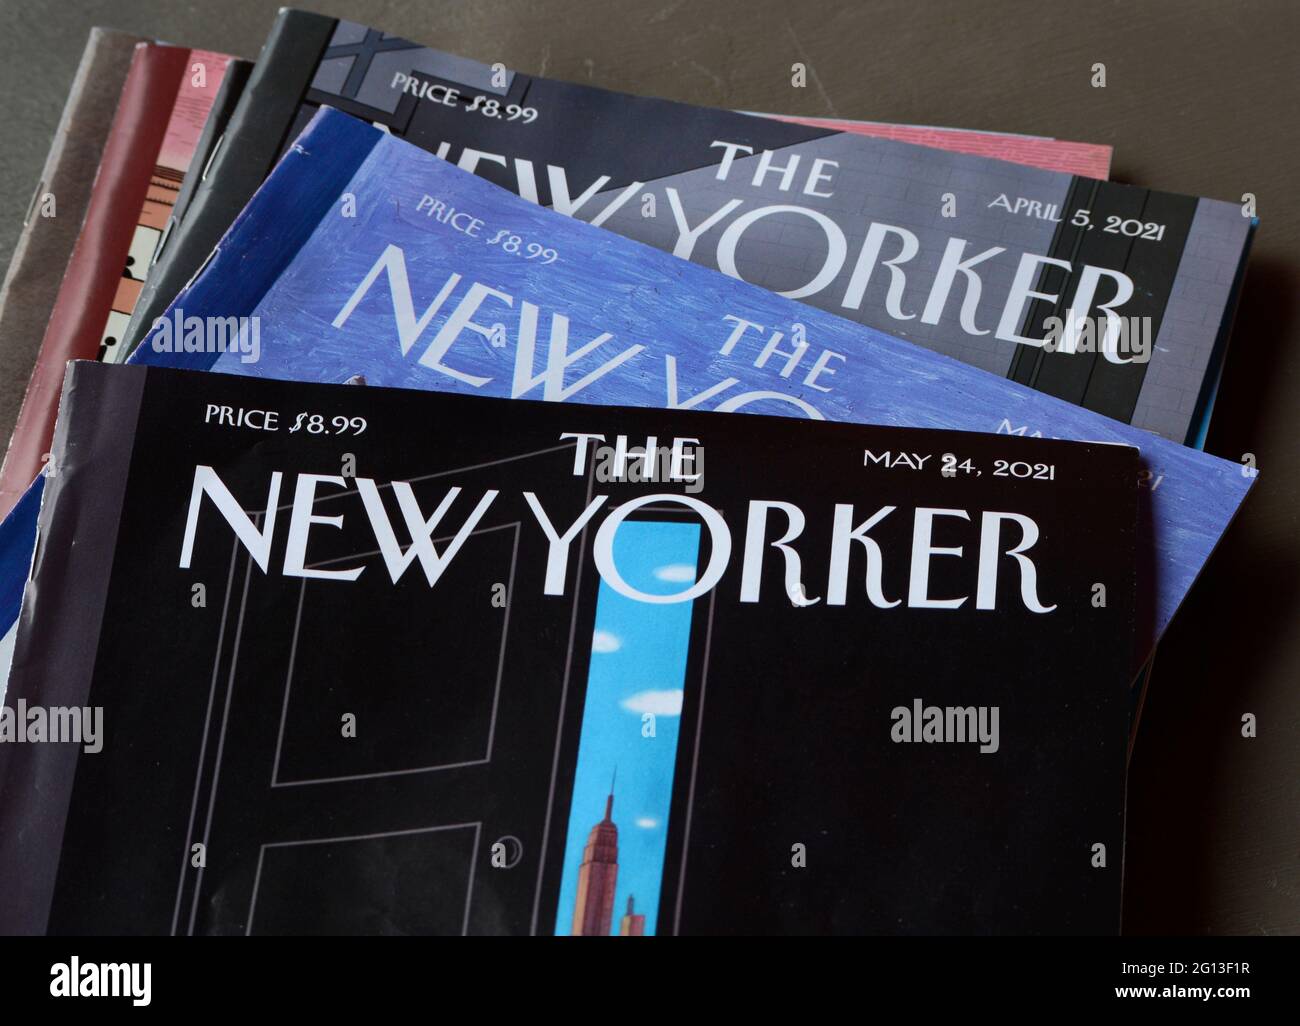 Kopien des Wochenmagazins The New Yorker, herausgegeben von Conde Nast. Stockfoto